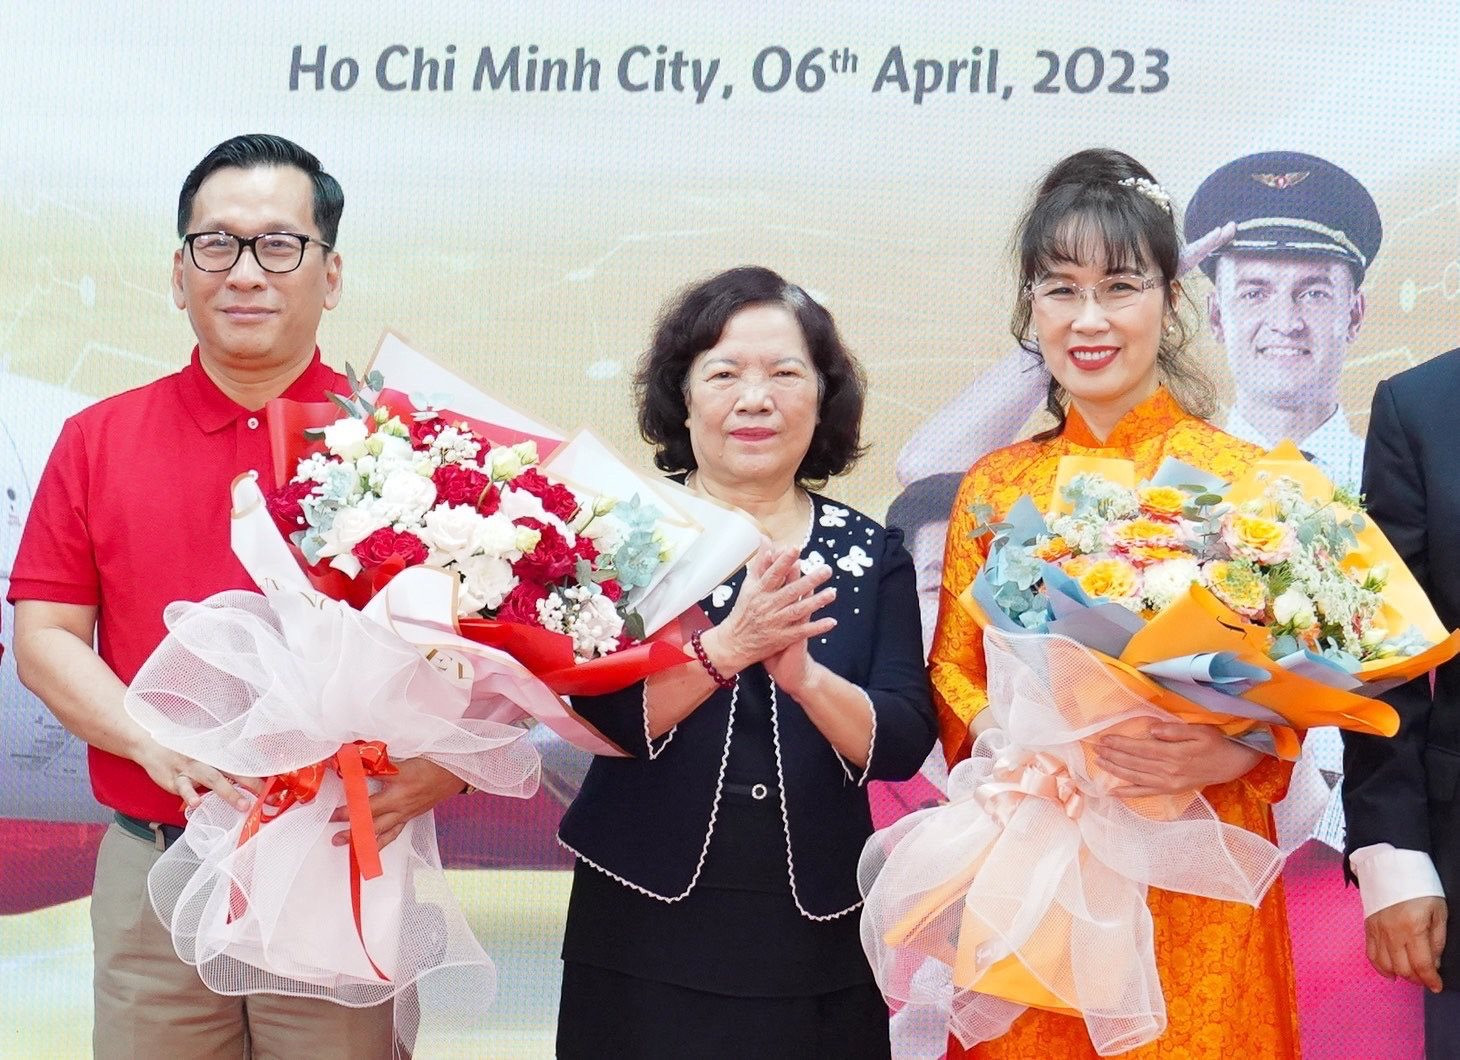 Bà Nguyễn Thị Phương Thảo thôi làm Tổng giám đốc Vietjet Air để ngồi ghế Chủ tịch Hội đồng quản trị - Ảnh 1.